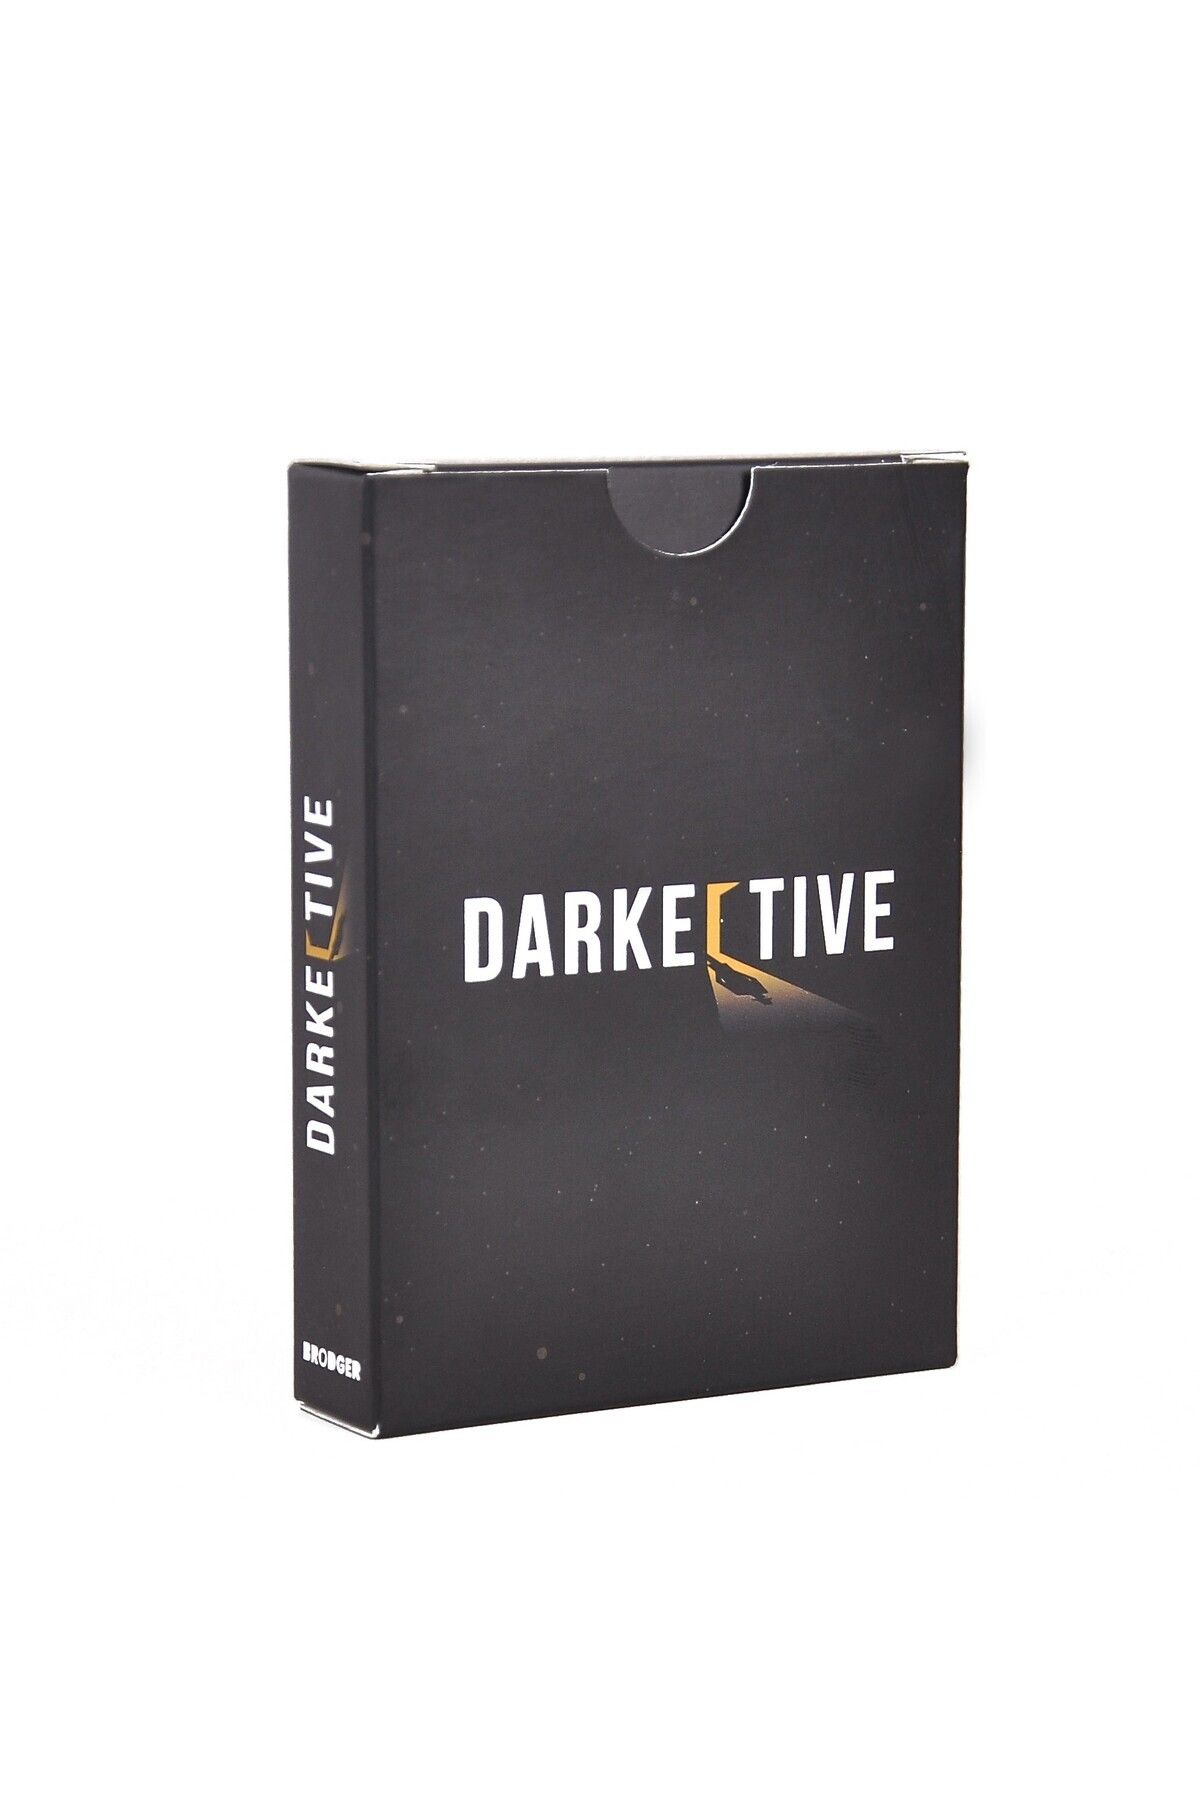 darkective Darkective Dedektiflik Oyunu-evet Hayır Oyunu-dedektif Oyunu-zeka Oyunu-kutu Oyunu-kart Oyunu